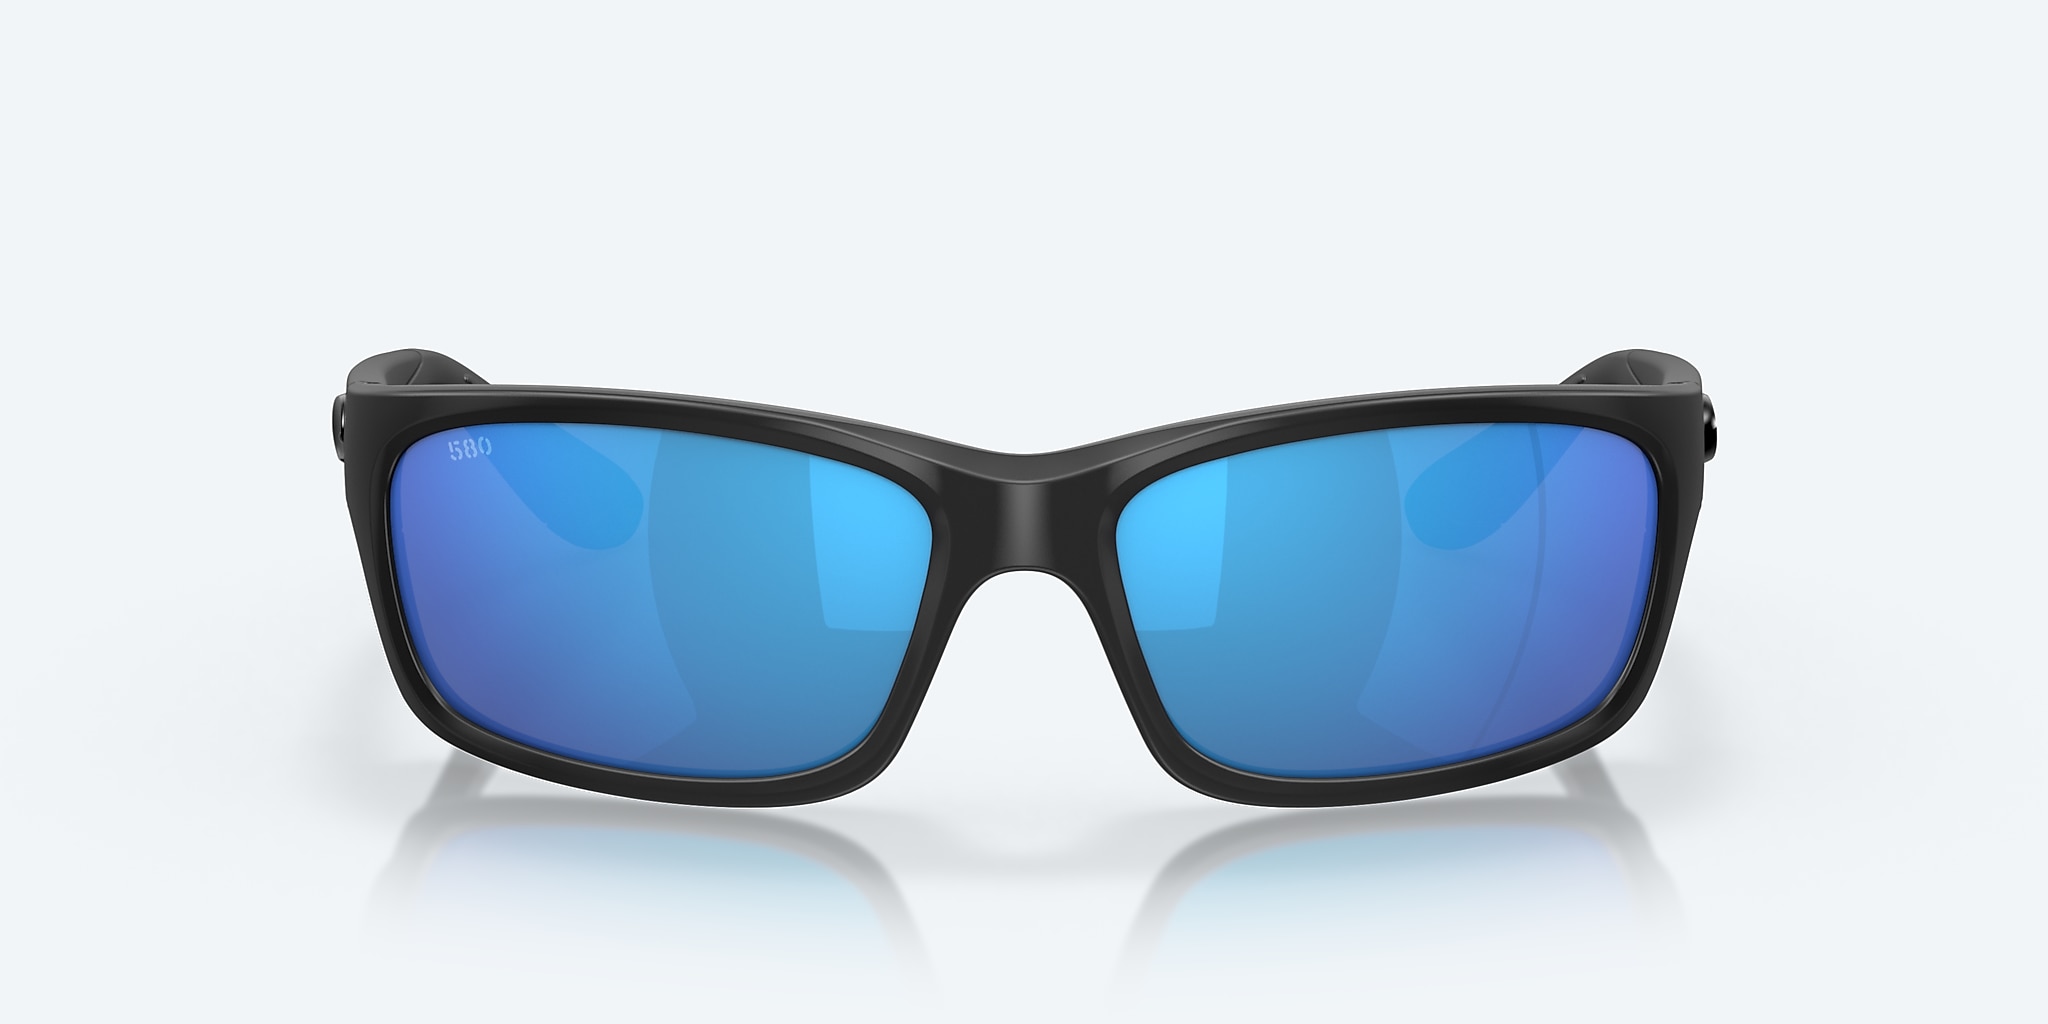 Jose Polarized Sunglasses in Blue Mirror